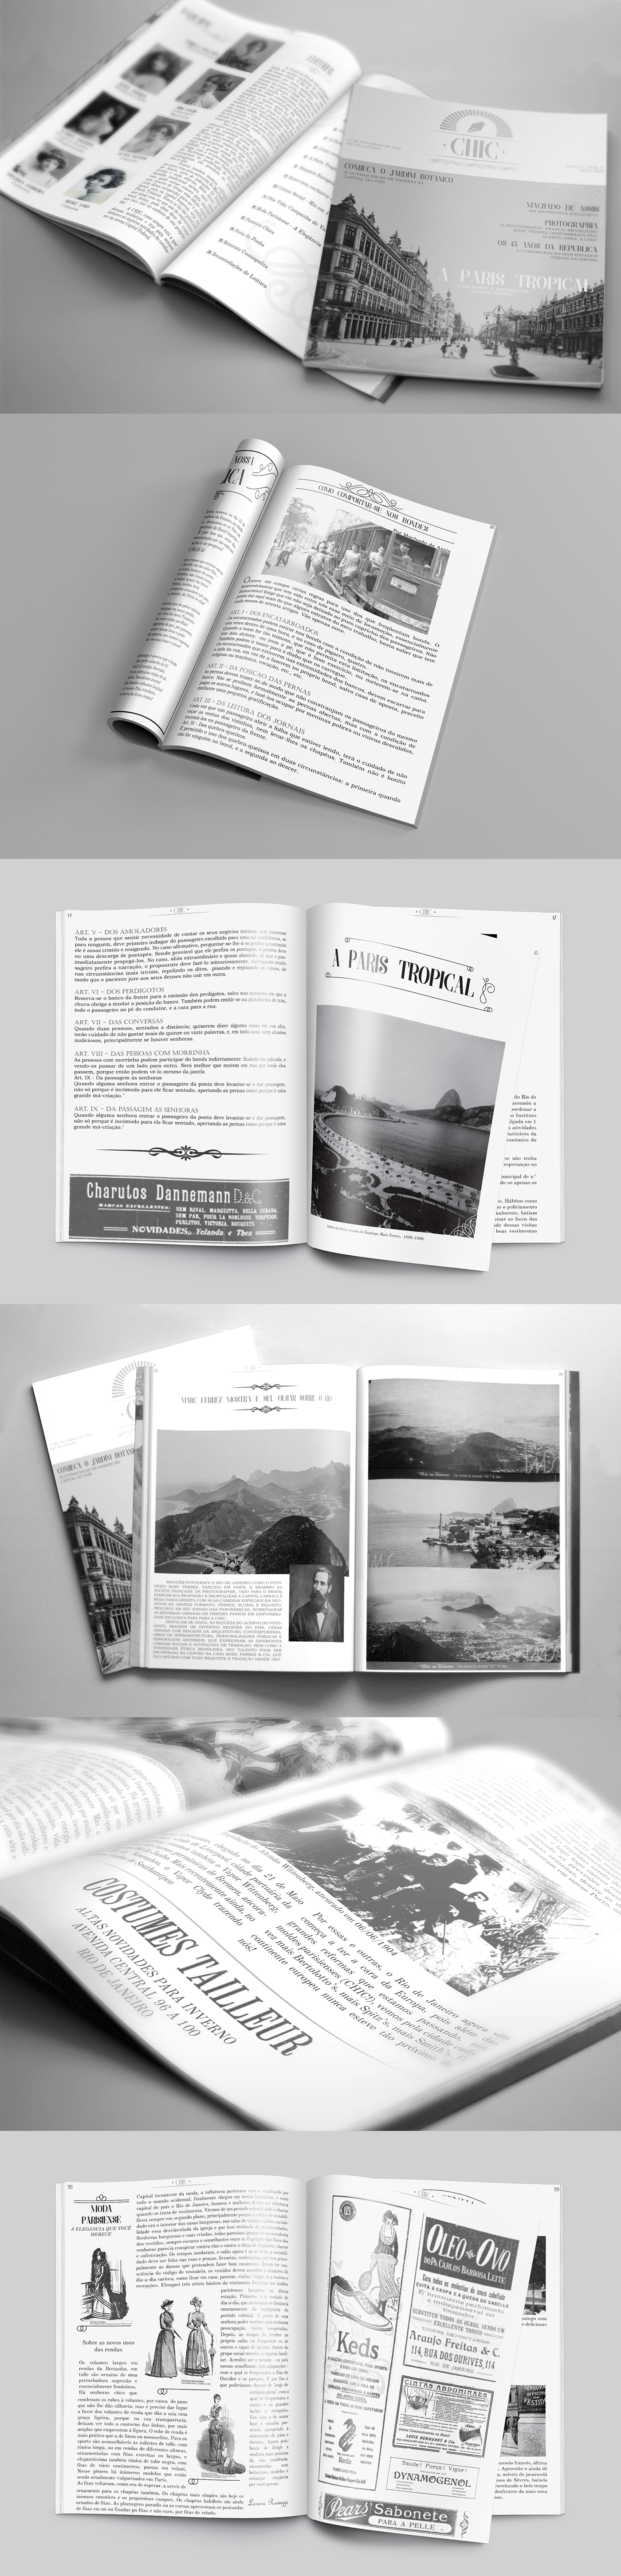 revista magazine historia ARQUITETURA architecture Rio de Janeiro História Brasileira brazilian history